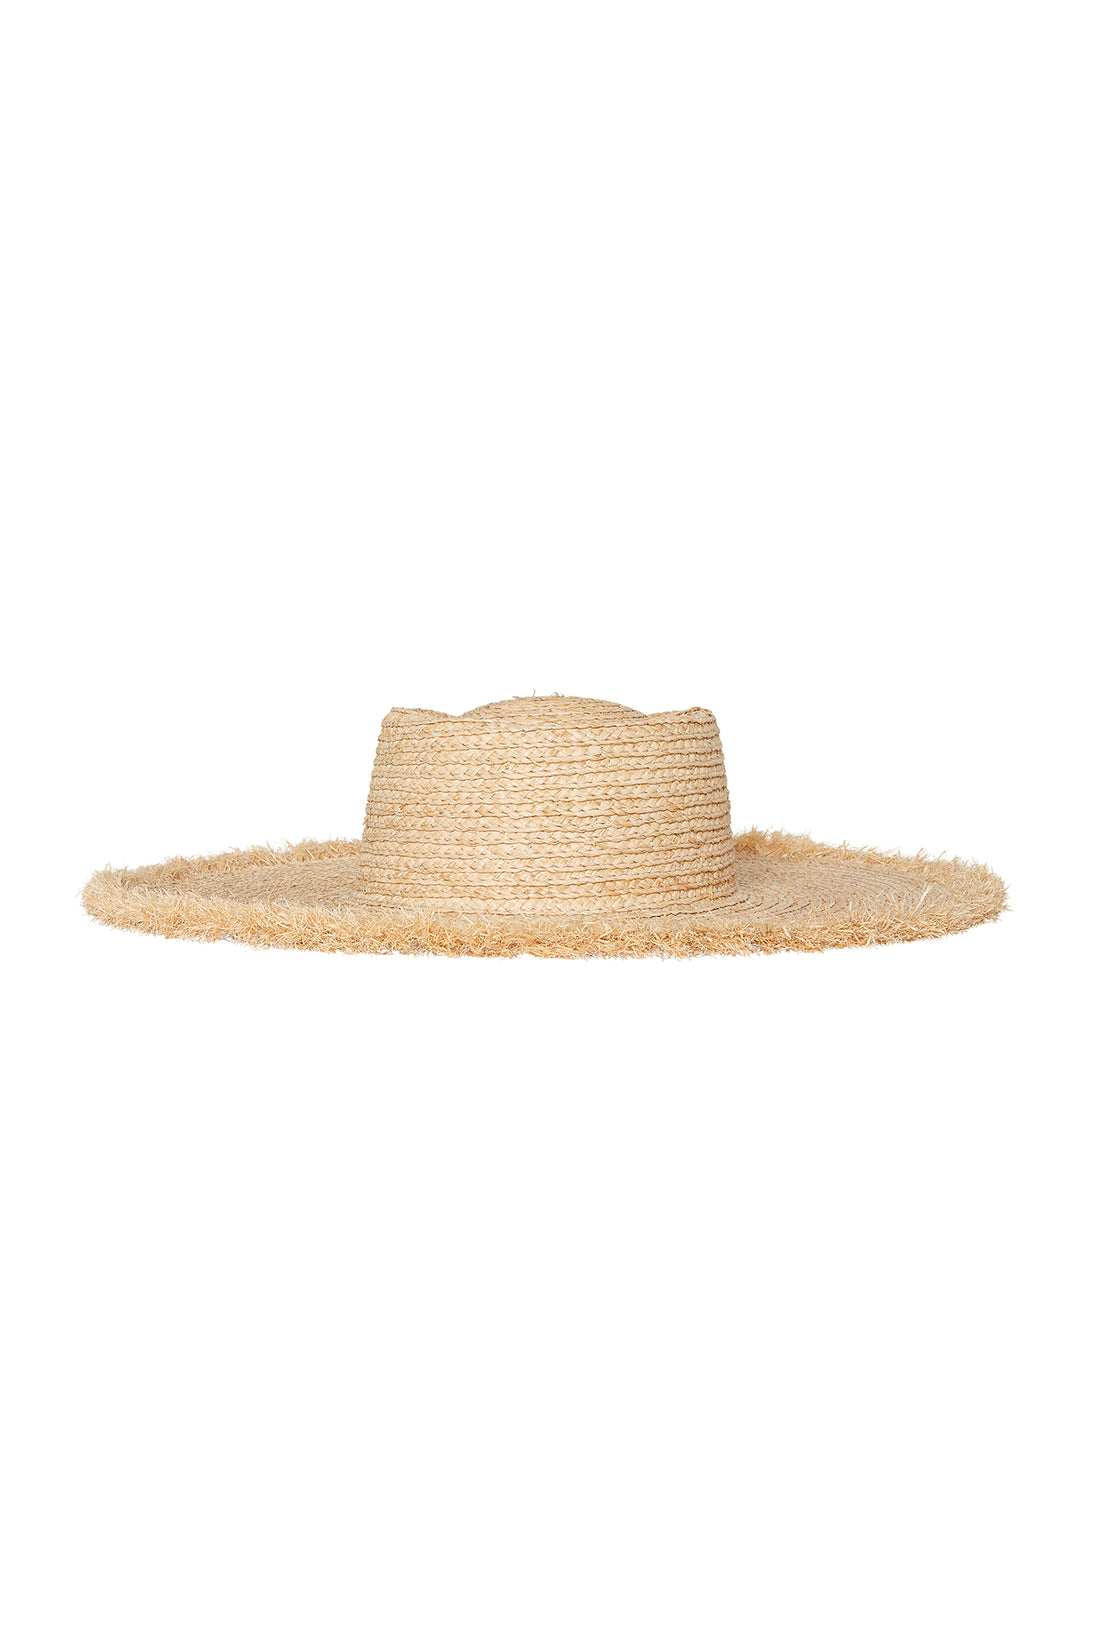 Bondi Hat - Small Brim – Monday Swimwear